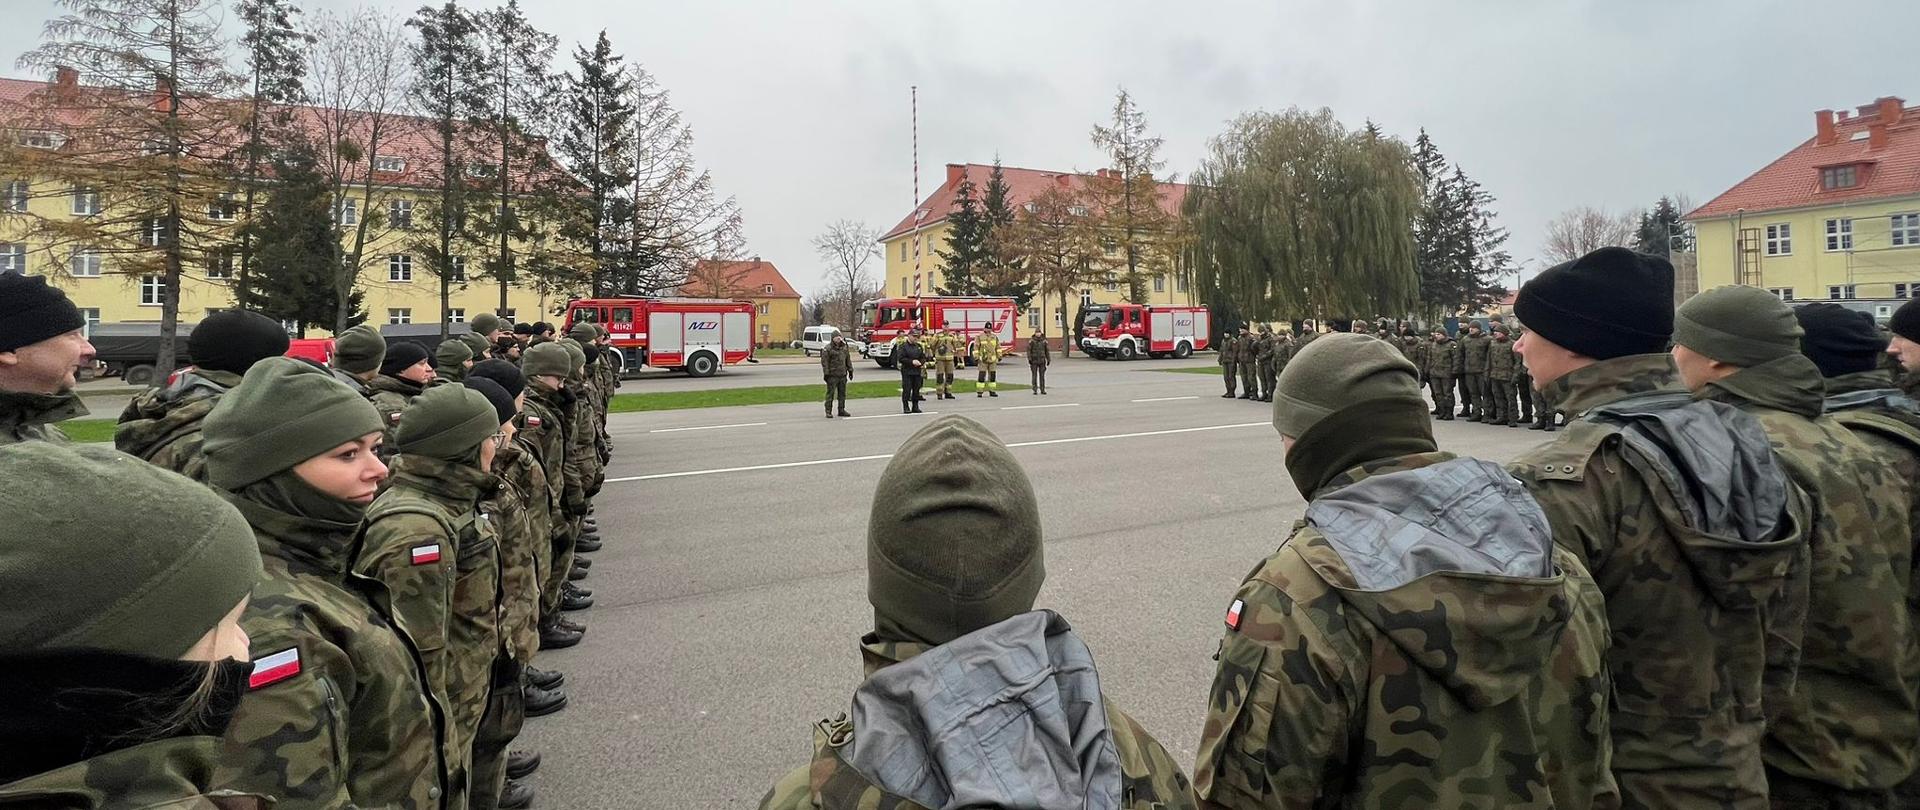 Plac wewnętrzny jednostki wojskowej. Z prawej i lewej strony oraz na dole zdjęcia stoją żołnierze w mundurach zielonych. W oddali trzy samochody strażackie oraz budynki.